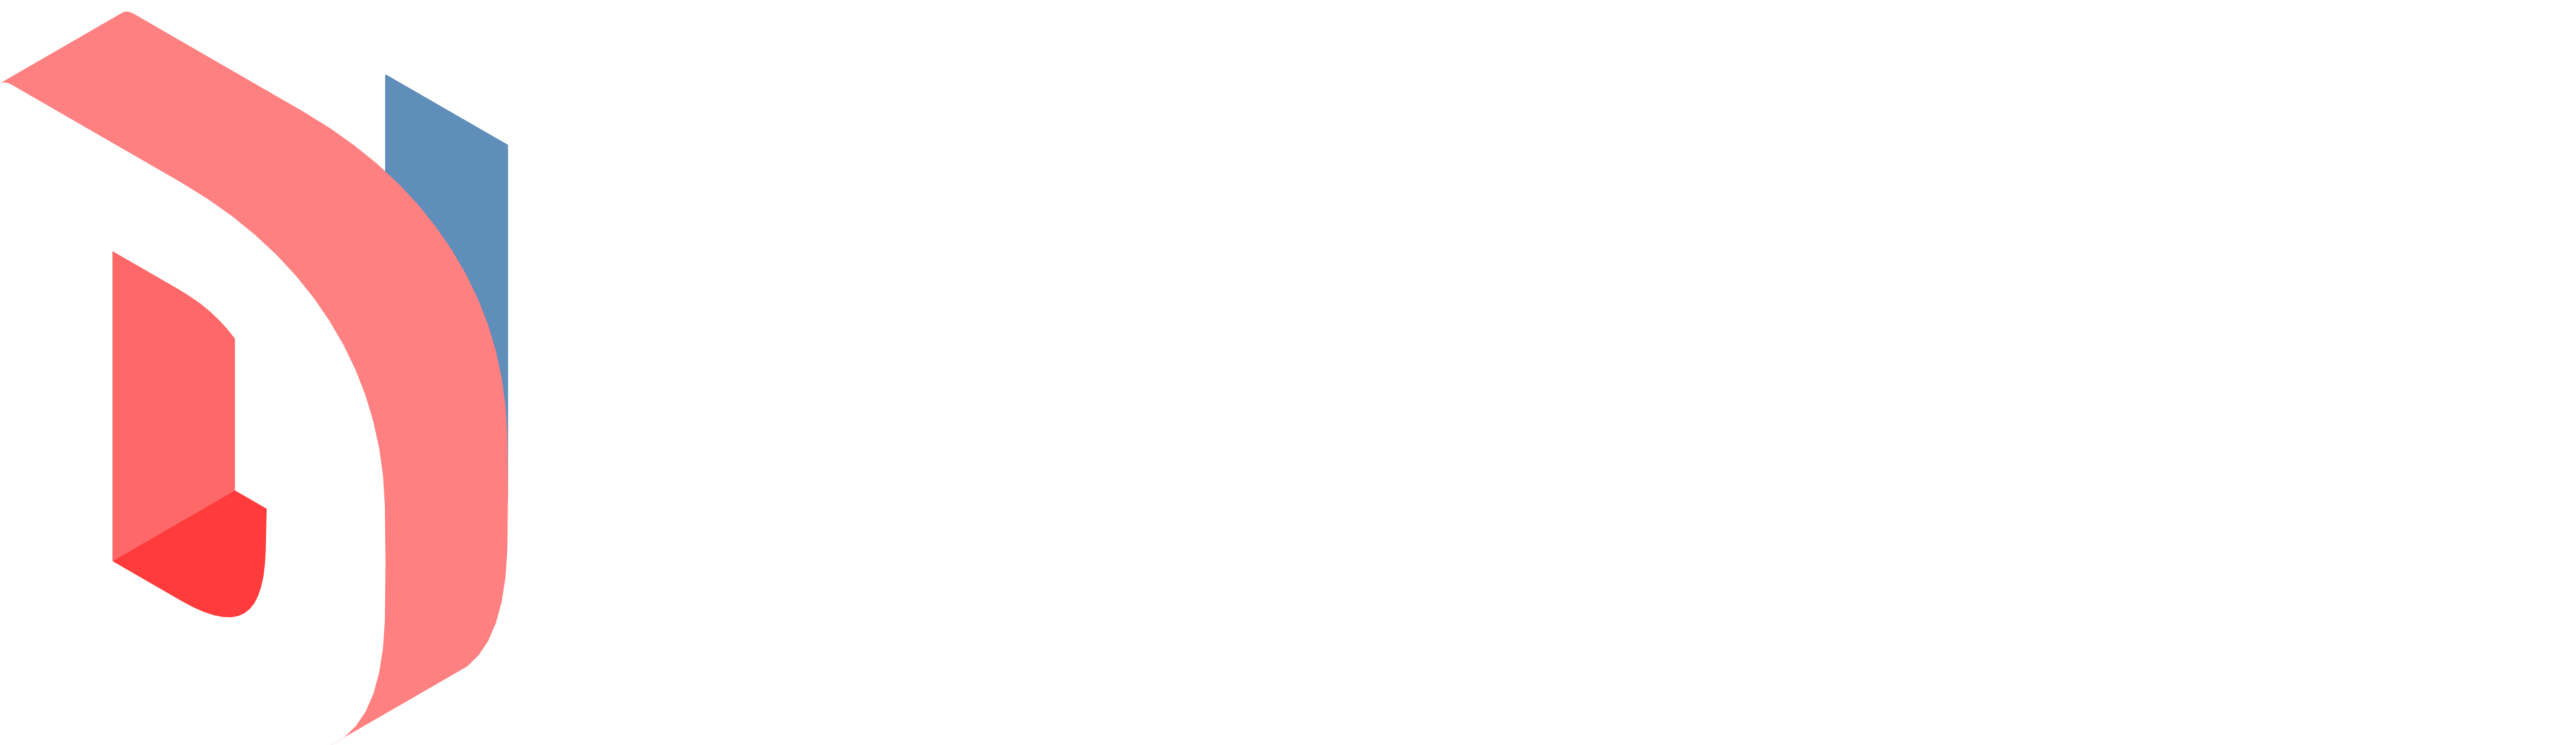 Digital Industries